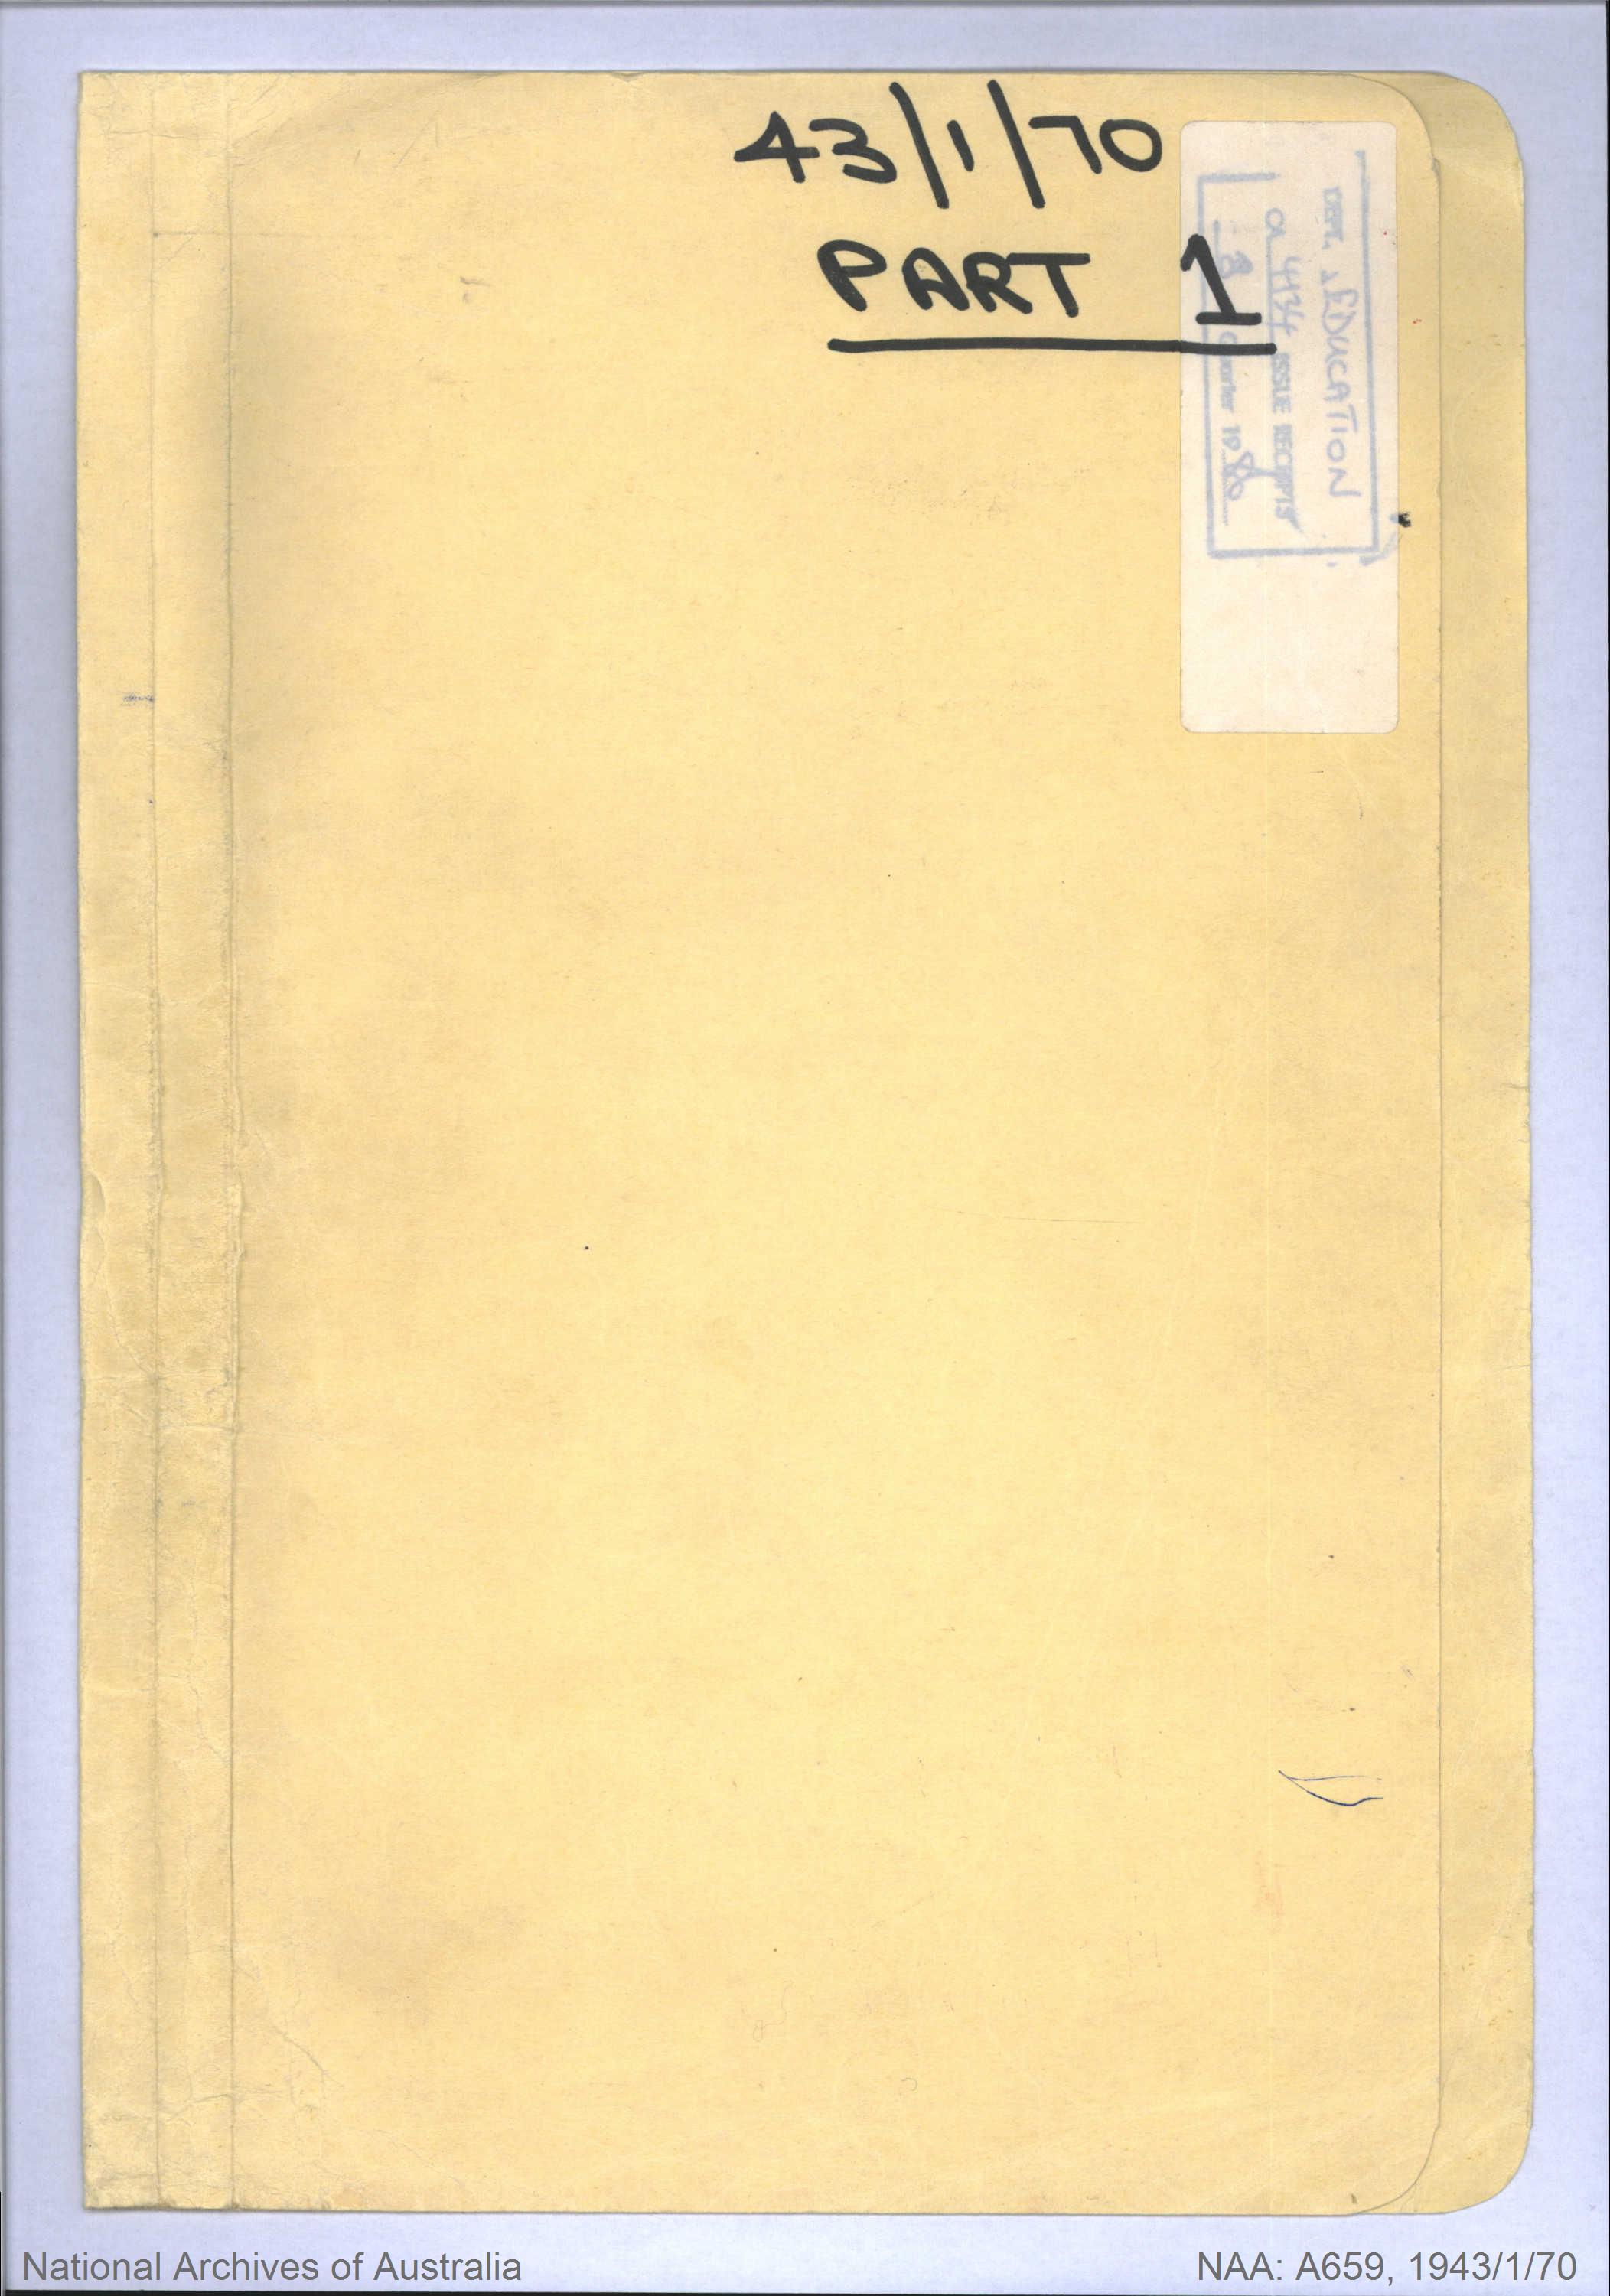 NAA: A659, 1943/1/70